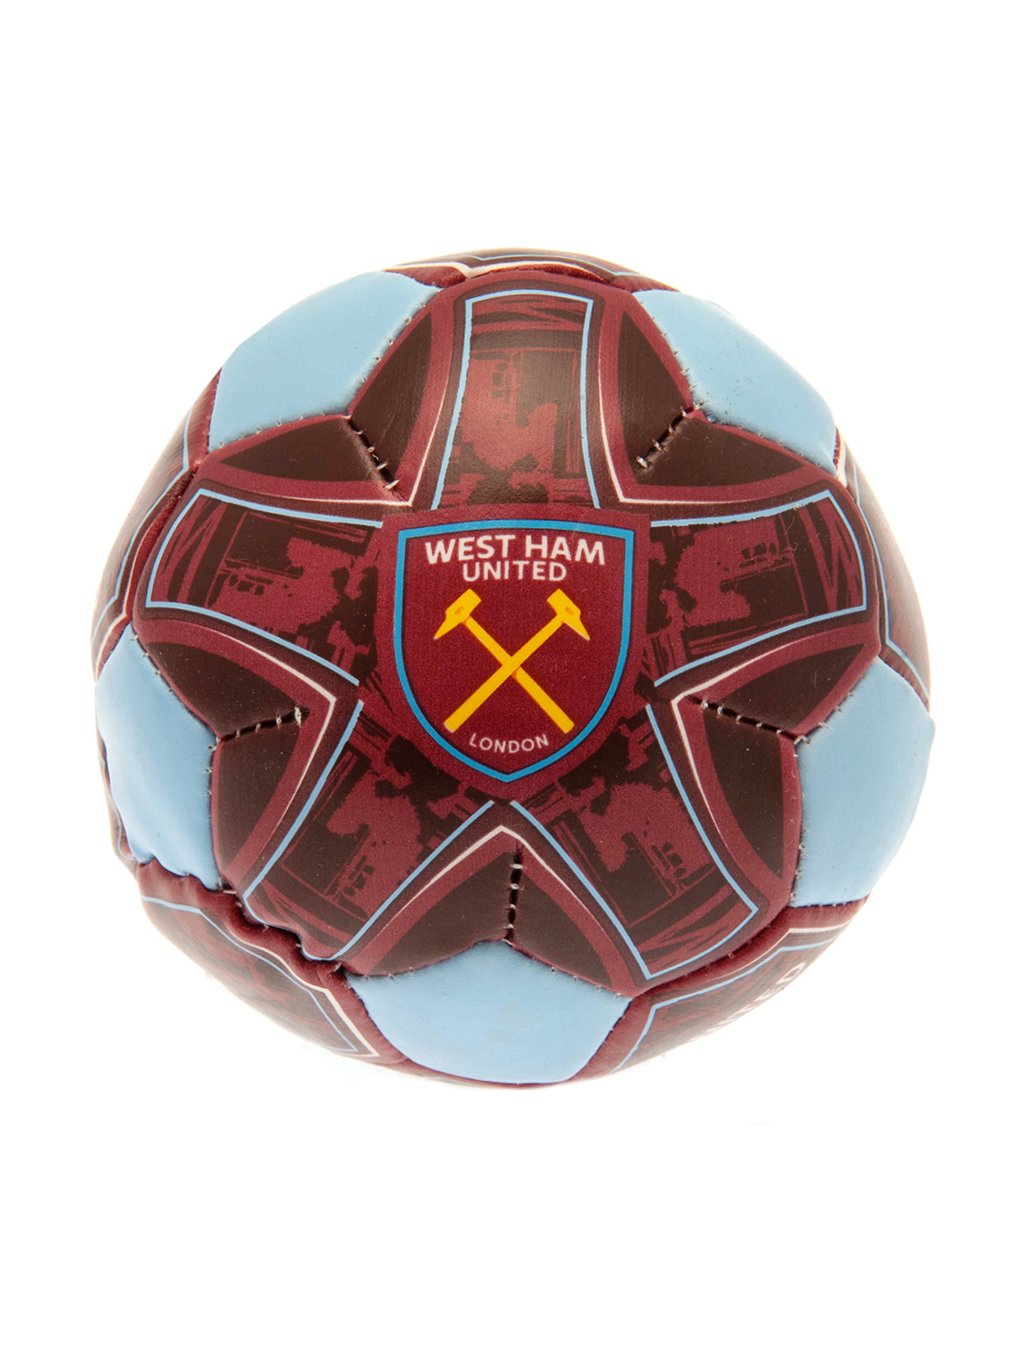 TM 00624 West Ham United FC 4 inch Soft Ball